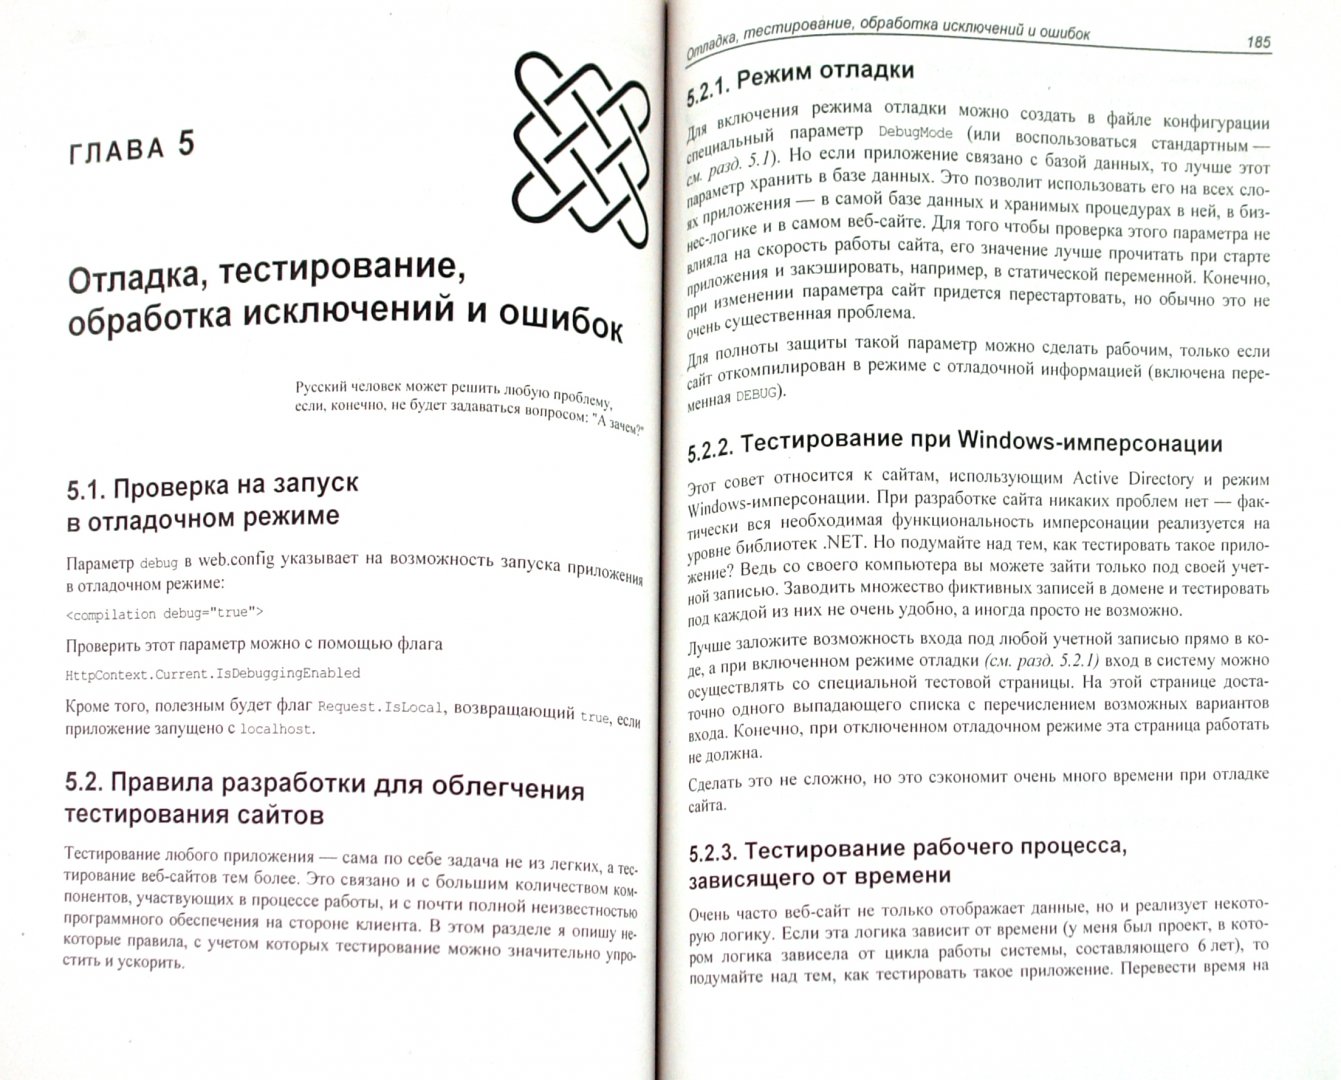 Иллюстрация 1 из 12 для ASP.NET. Сборник рецептов (+CD) - Павел Агуров | Лабиринт - книги. Источник: Лабиринт